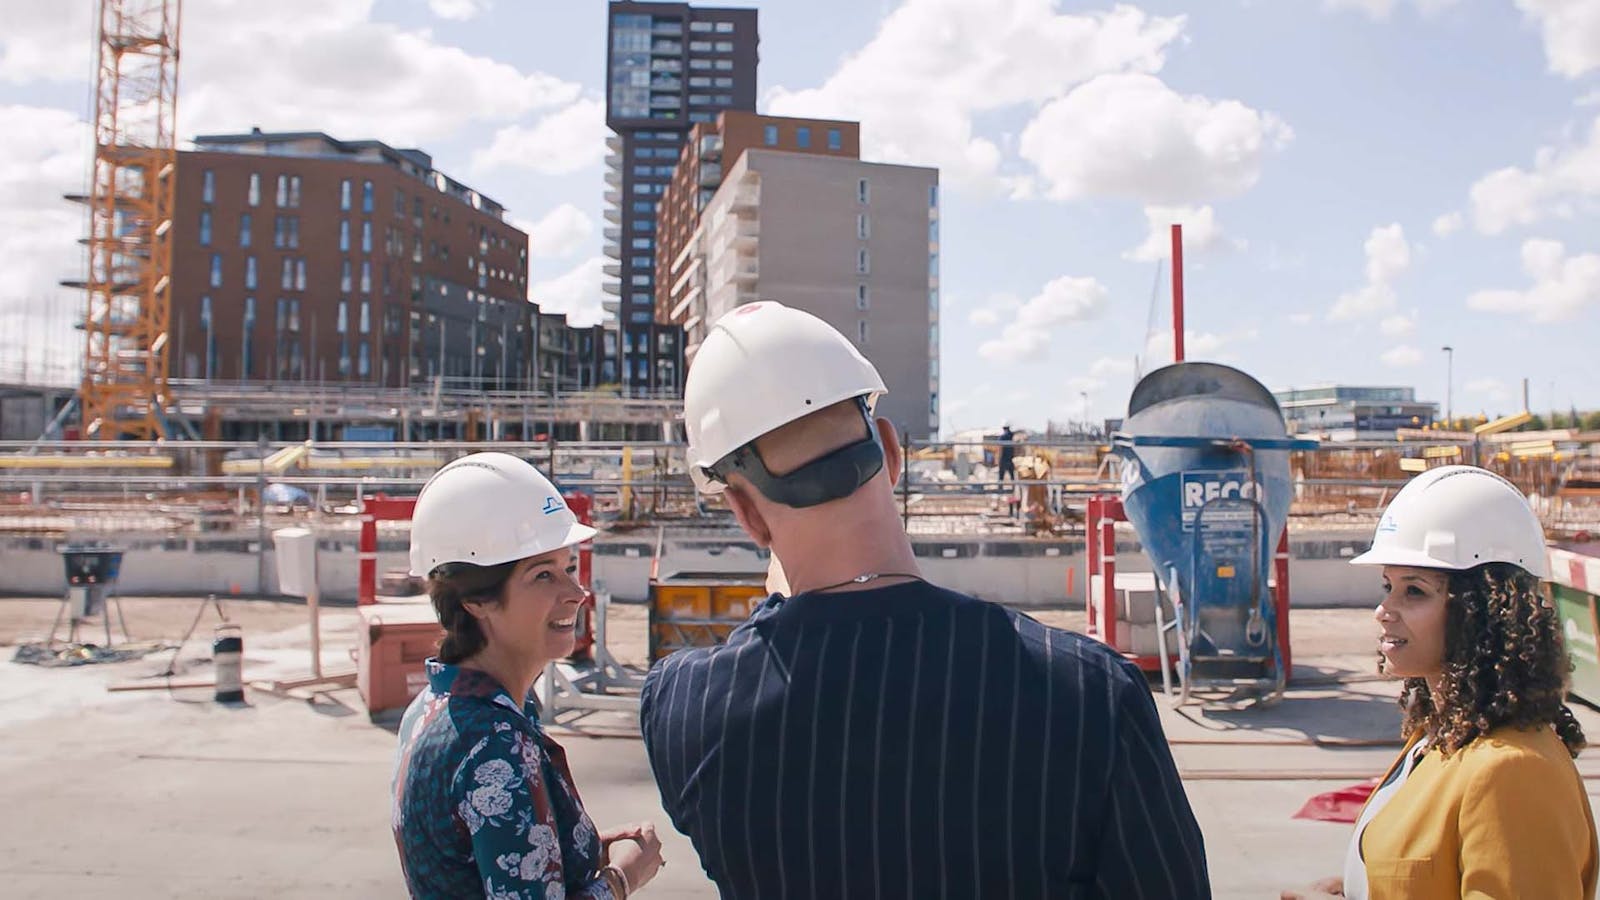 Drie mensen op een bouwplaats. Ze dragen alle drie een witte helm.